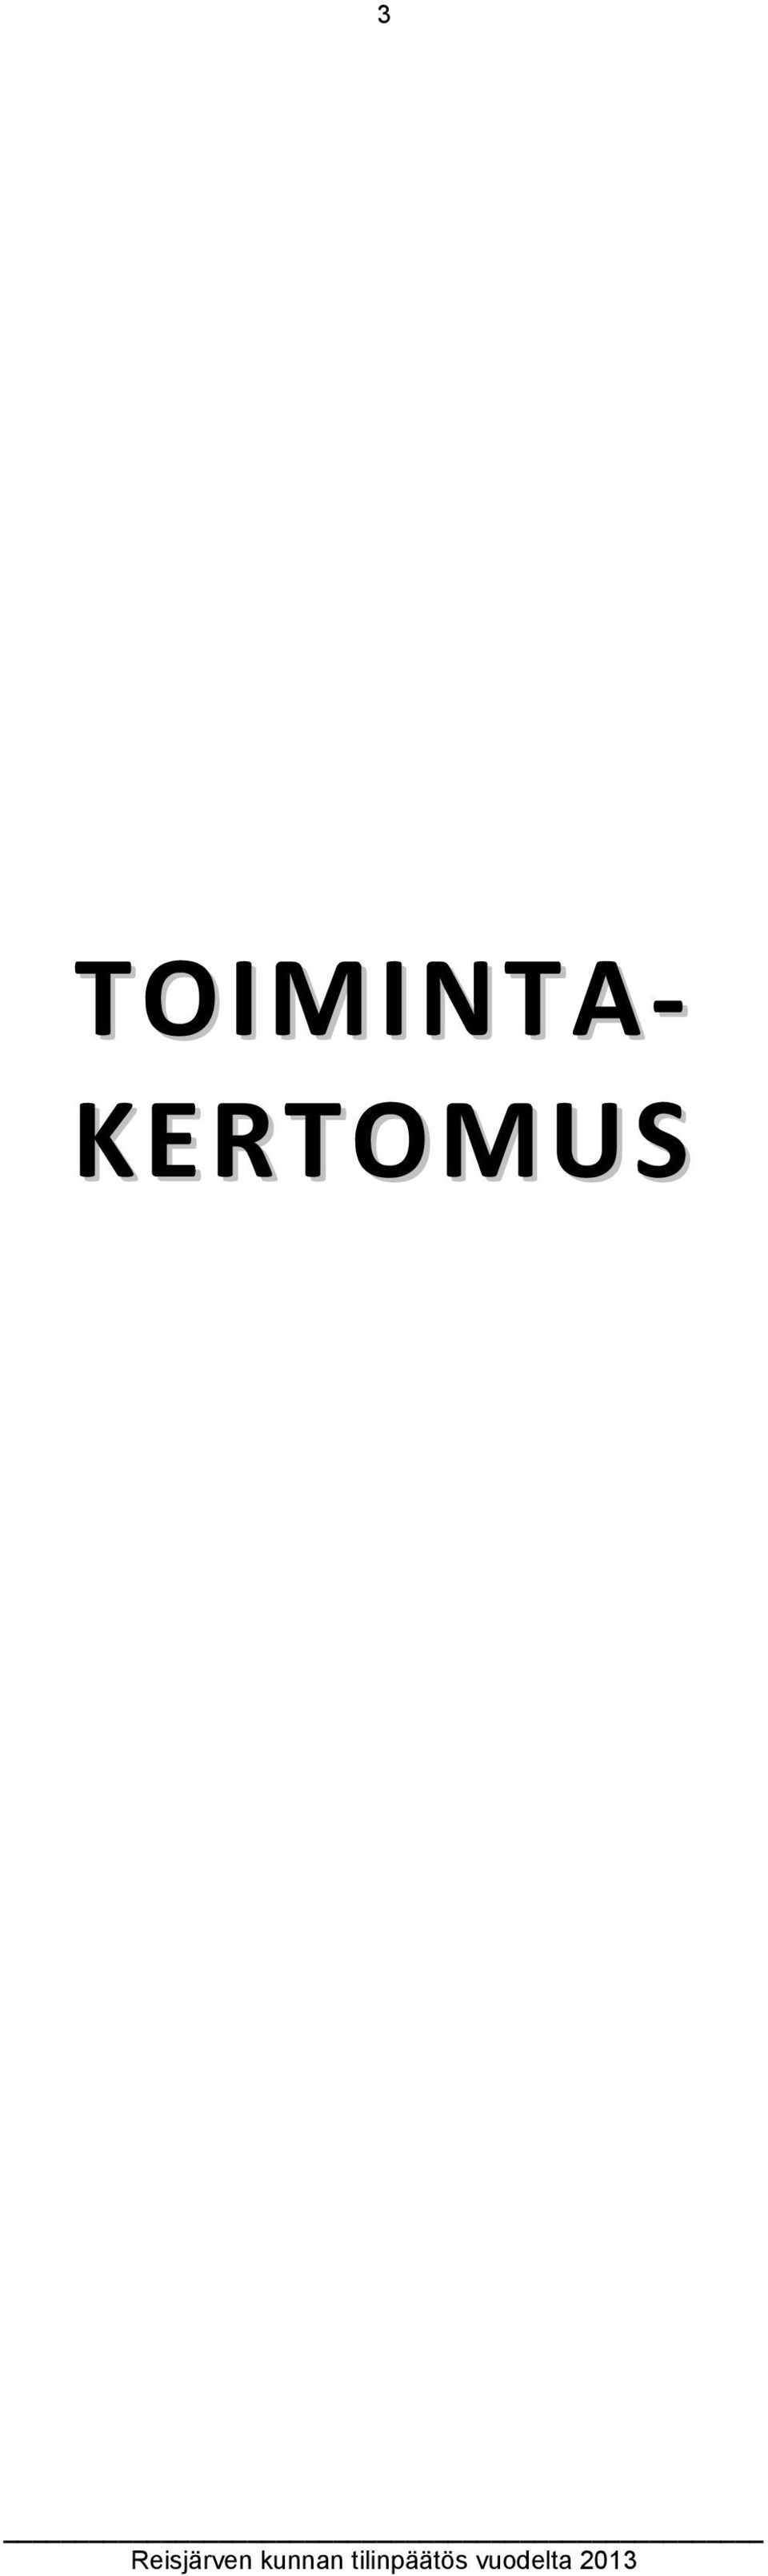 KERTOMUS